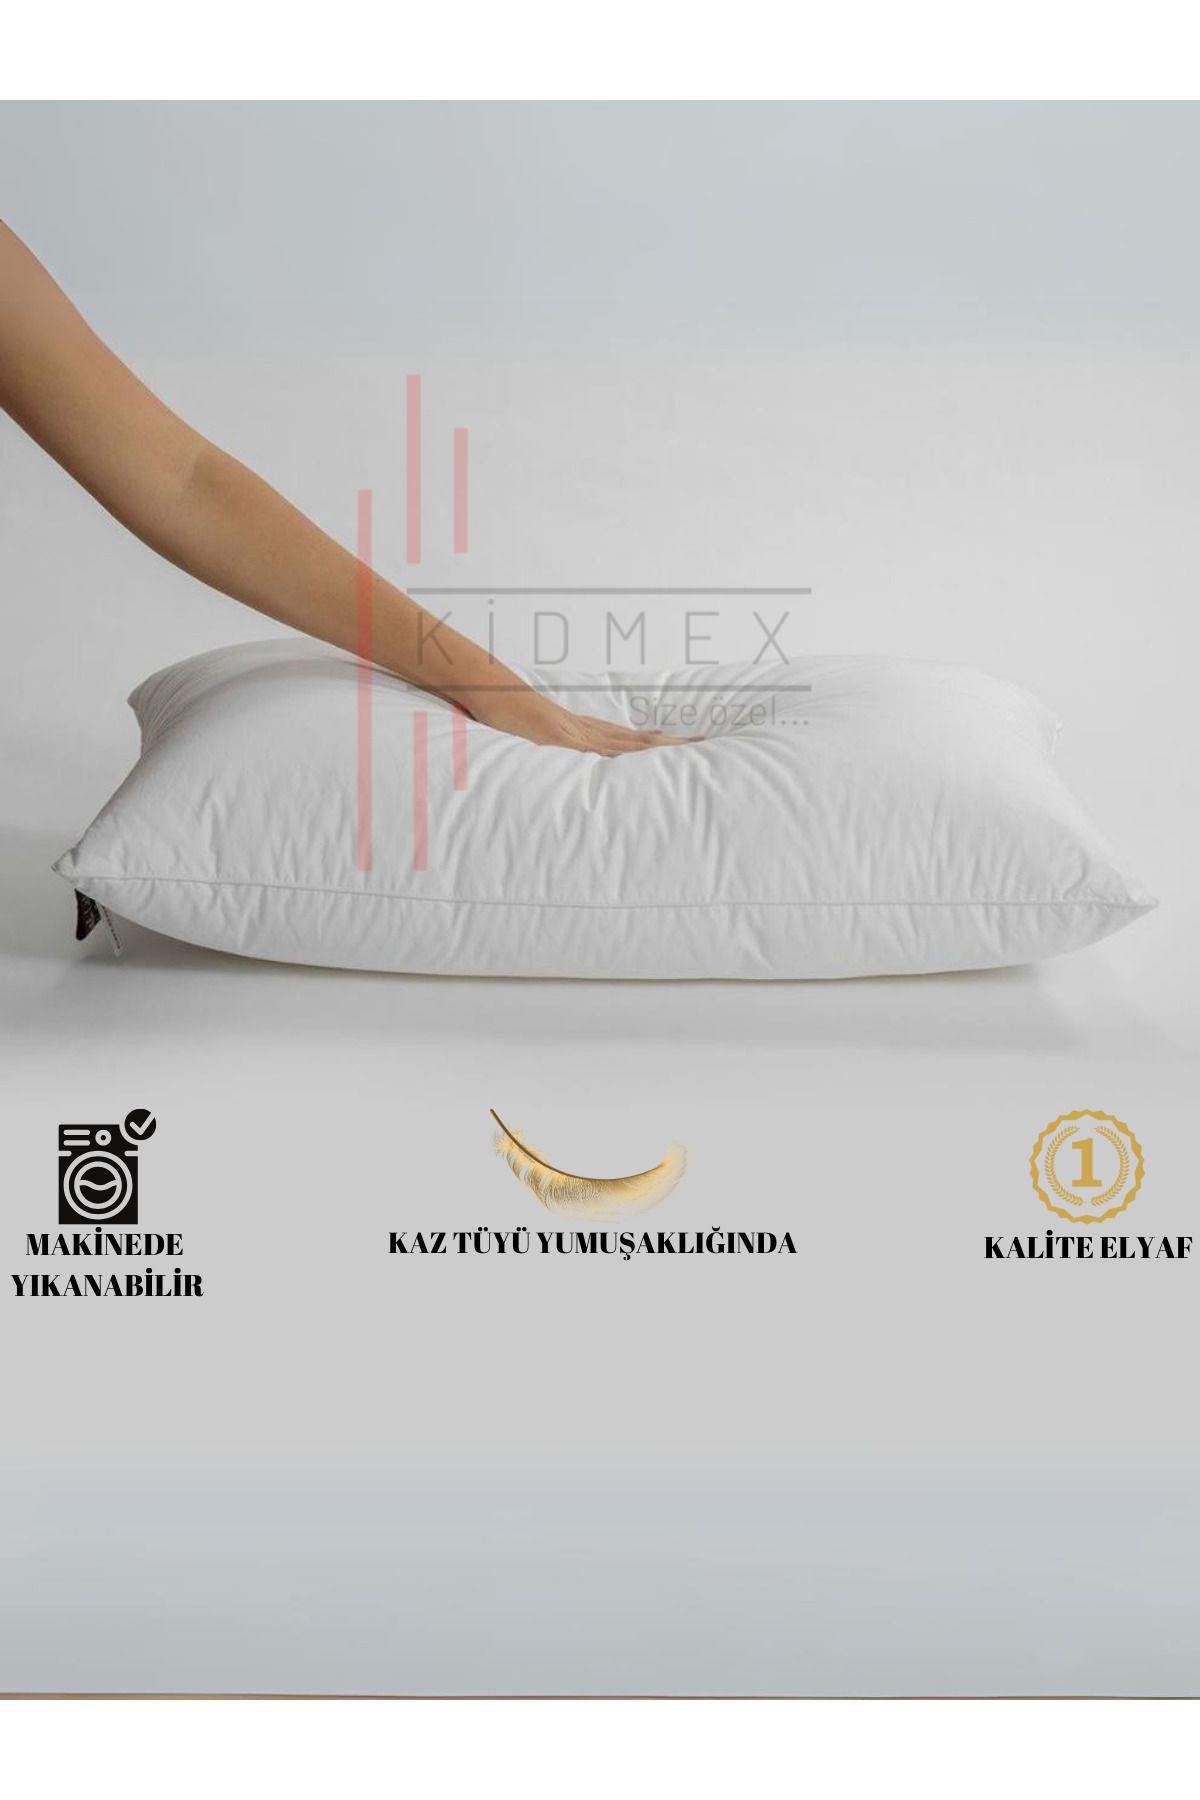 Kidmex Premium Roll Pack Yıkanabilir Yüksek Yastık 700gr